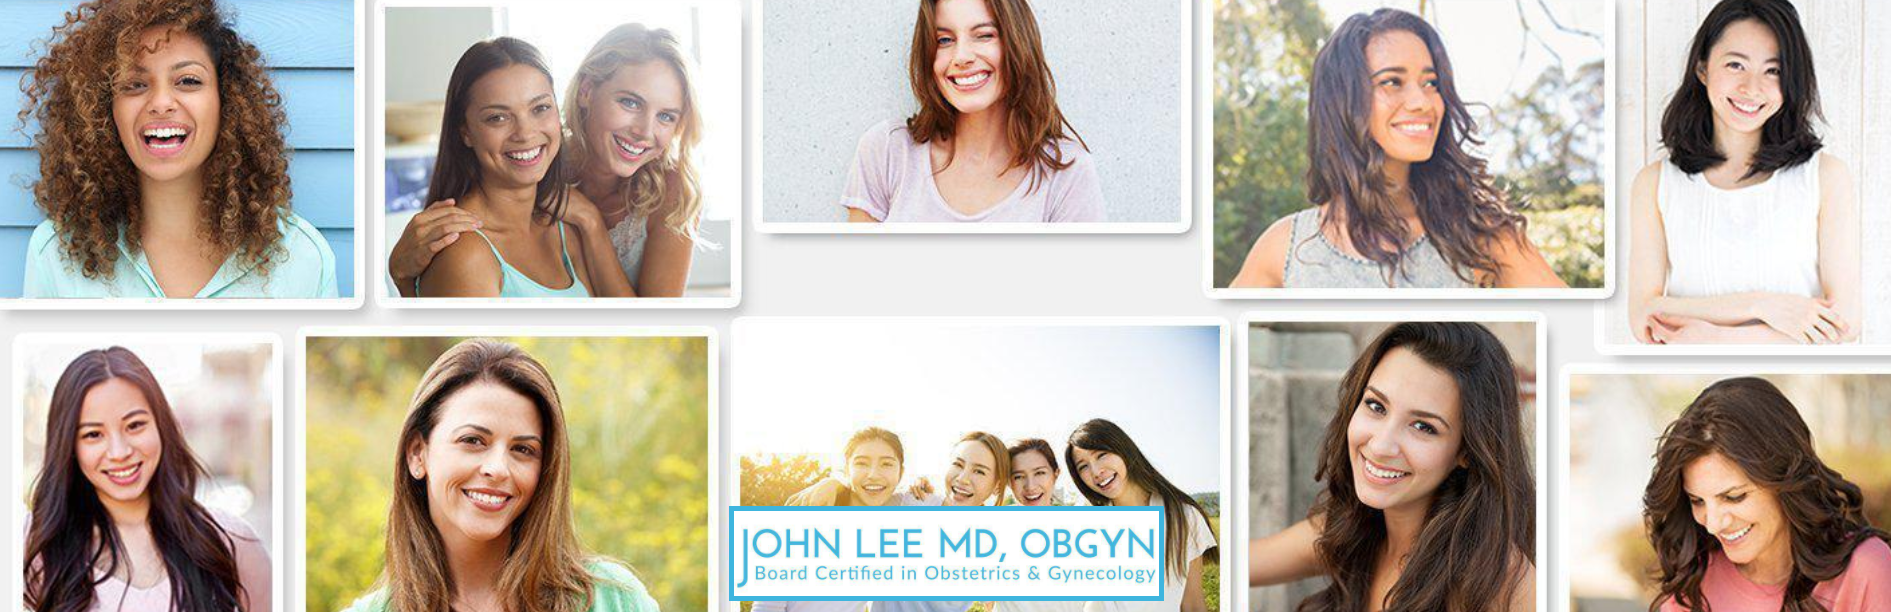 John Y. Lee Obstetrics & Gynecology - Suwanee, GA - Nextdoor